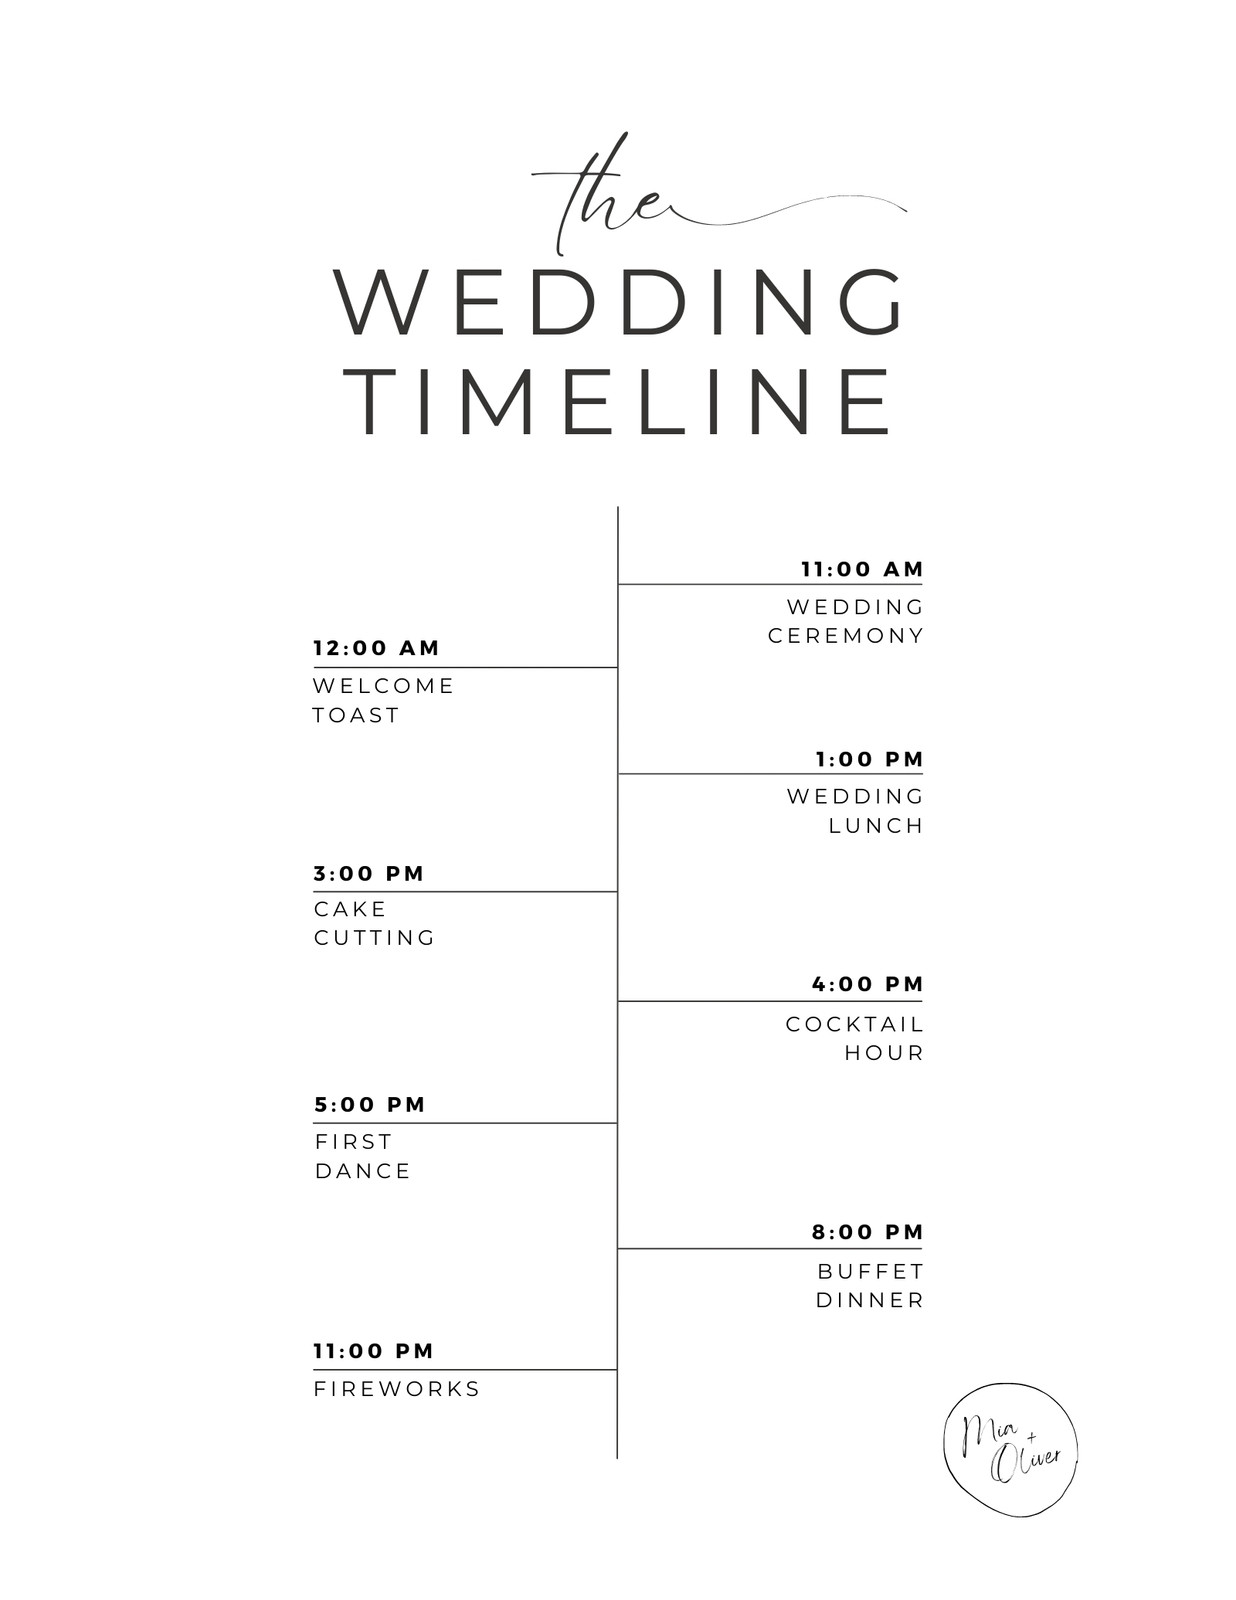 White Aesthetic Wedding Timeline Planner